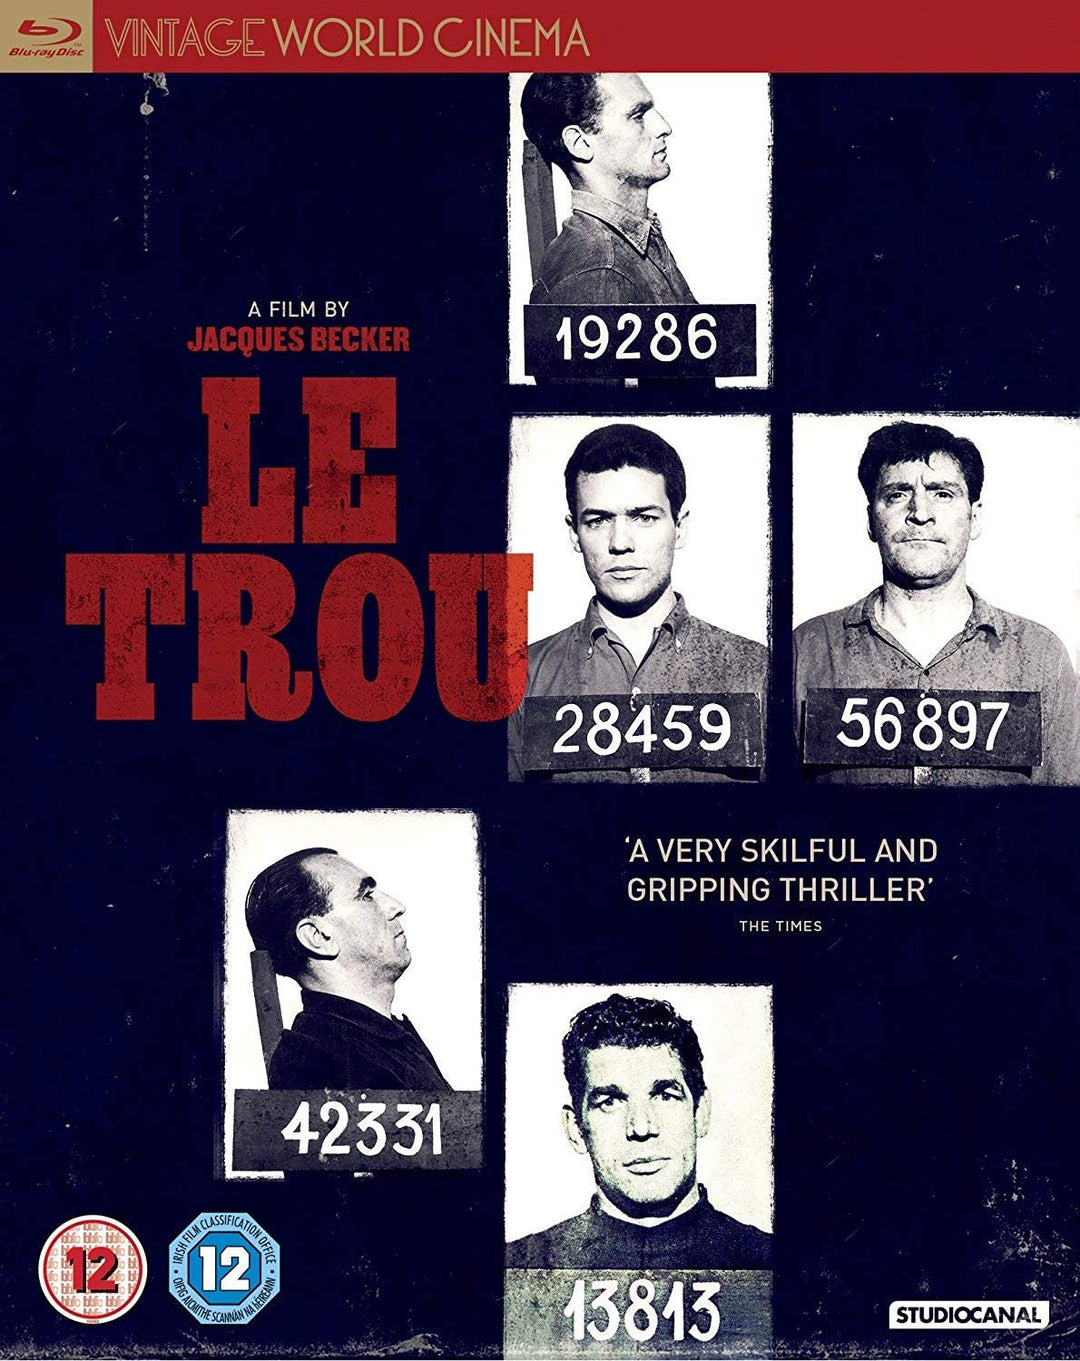 Le Trou [1960] - Crime/Drama [Blu-ray]